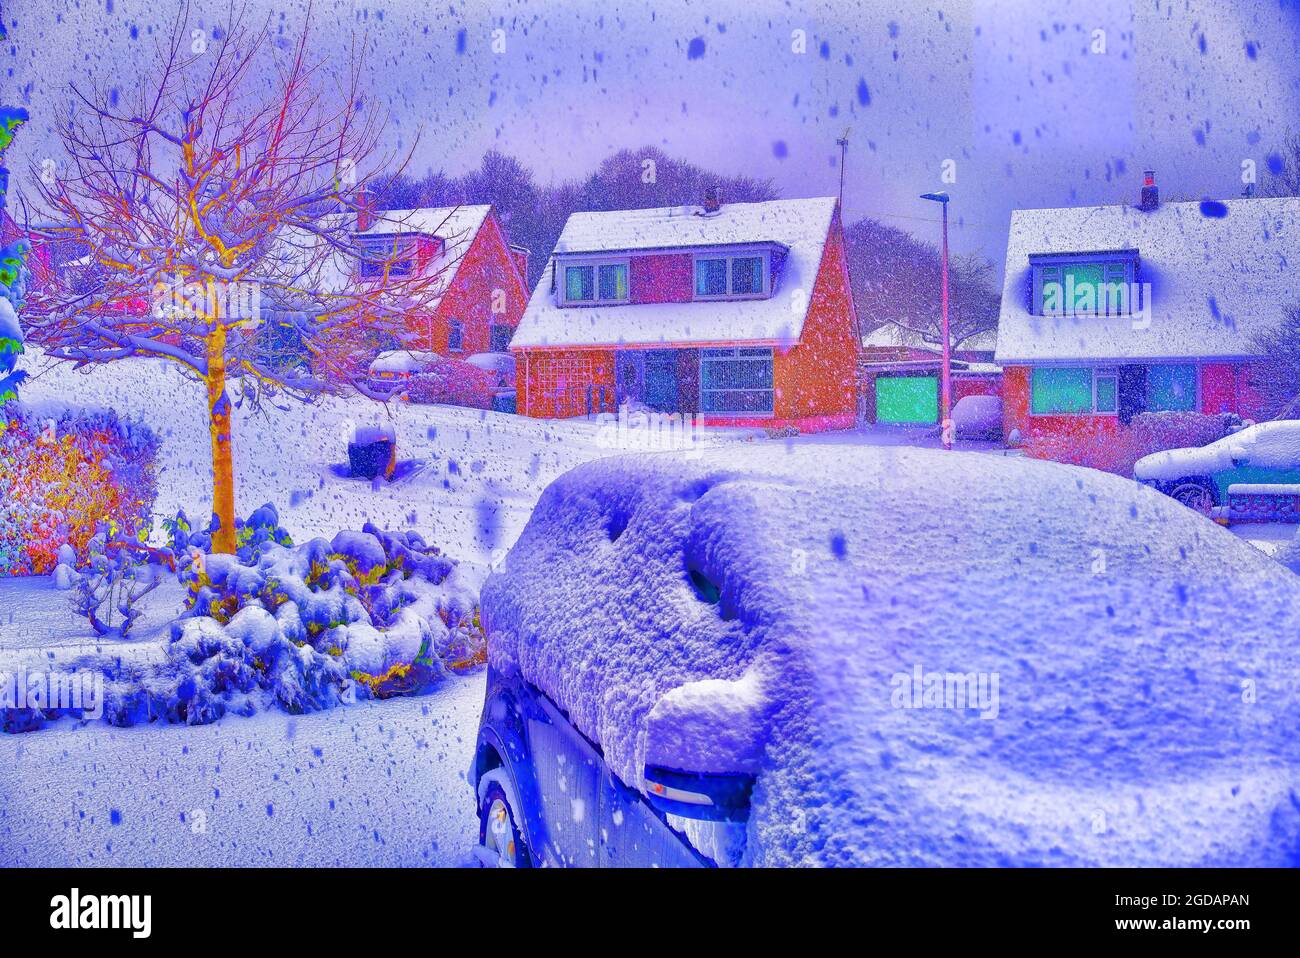 Amélioration numérique, manipulation, scène enneigée dans le domaine de l'habitation, forte chute de neige, voitures neigées, couvertes de neige, scène d'hiver, Écosse, Royaume-Uni. Banque D'Images